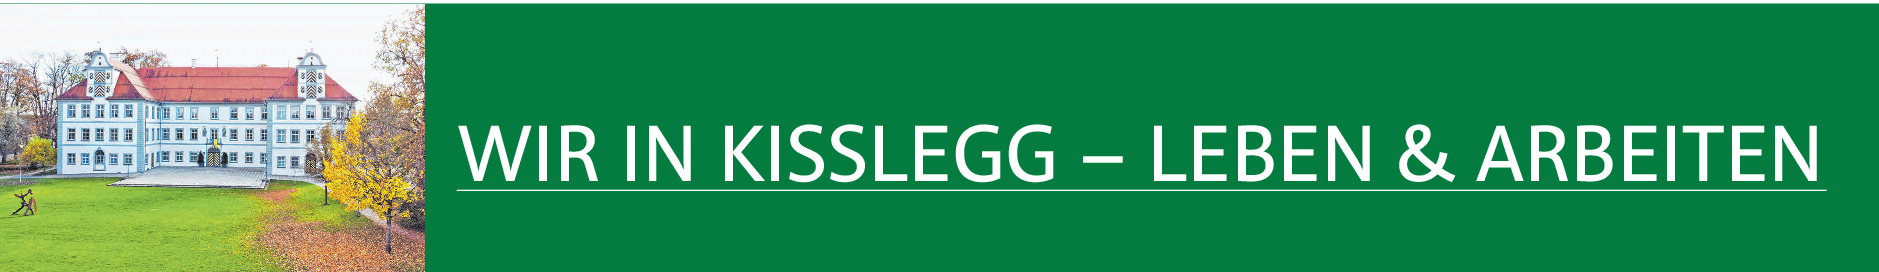 Verkehrs- und Gewerbeverein Kißlegg: Ein frischer Wind weht im VGV